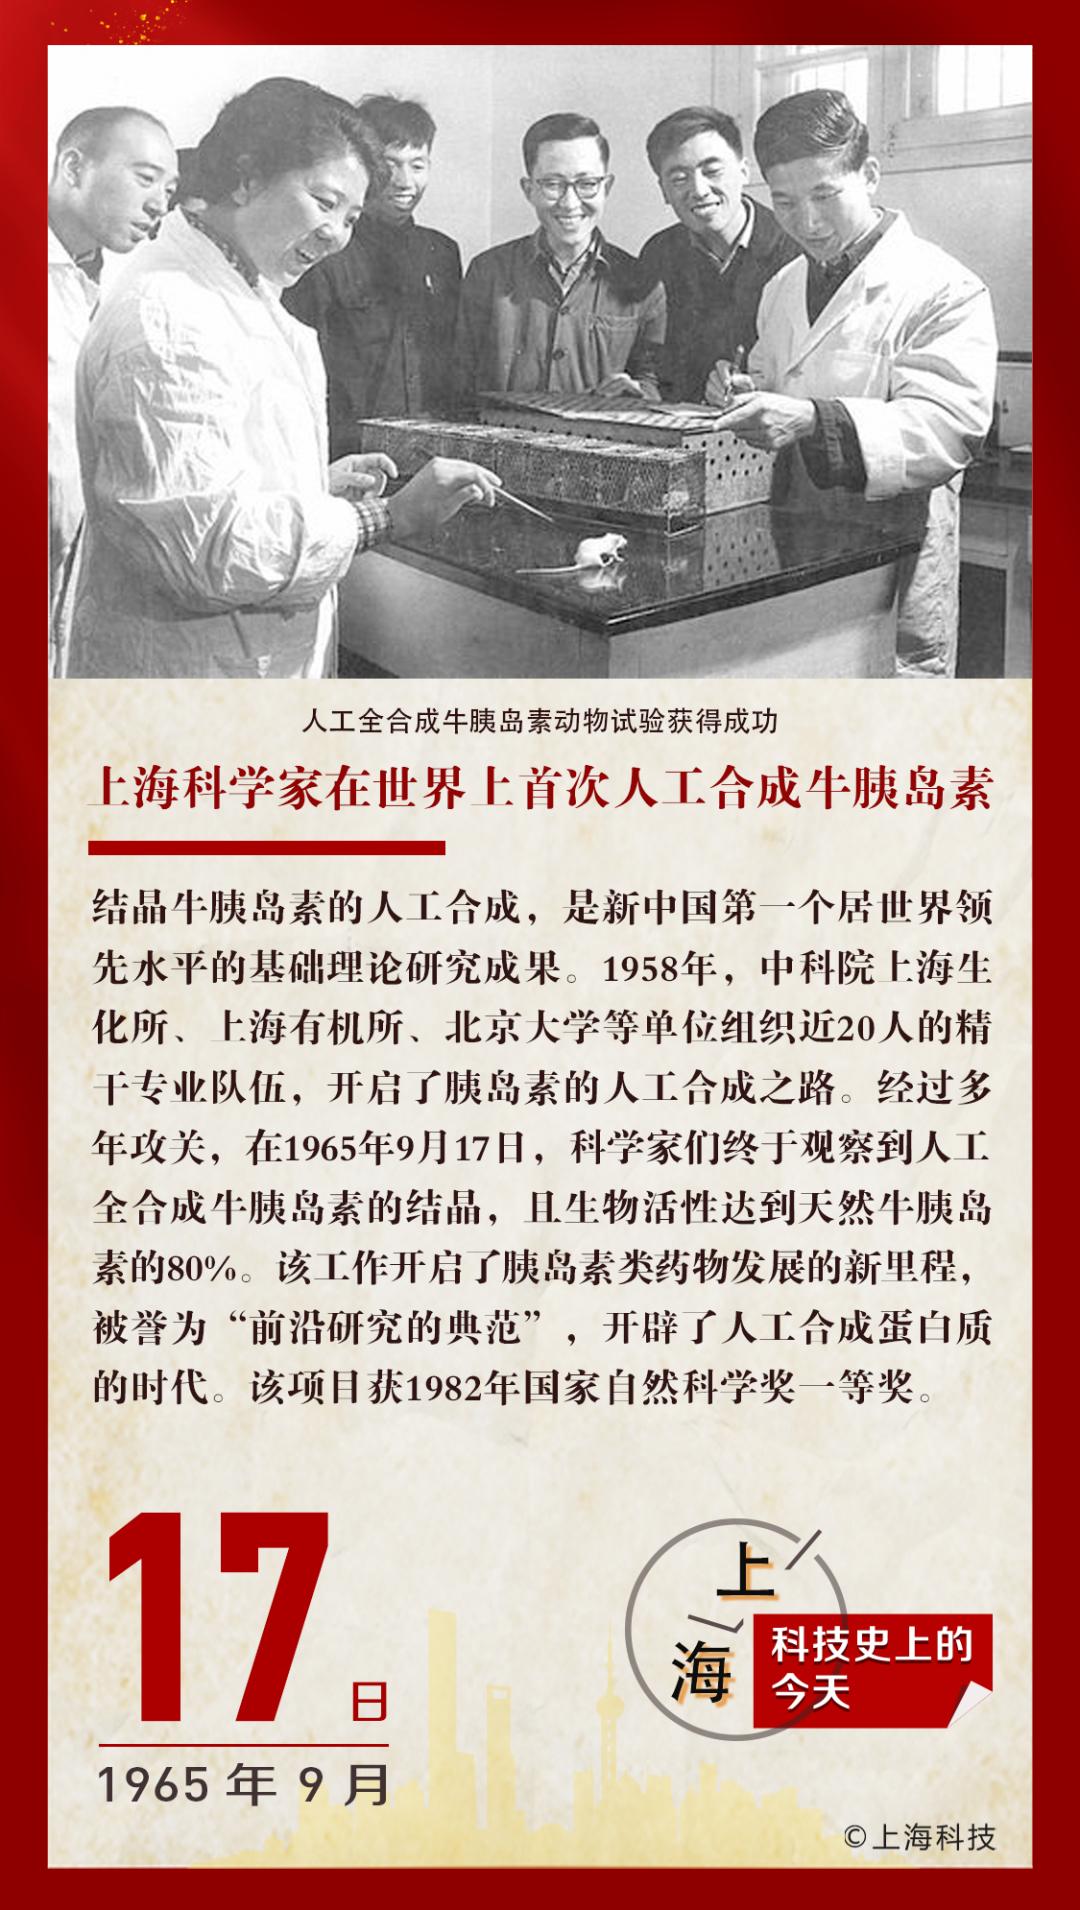 1965年的今天,中国科学家在世界上首次人工合成牛胰岛素 